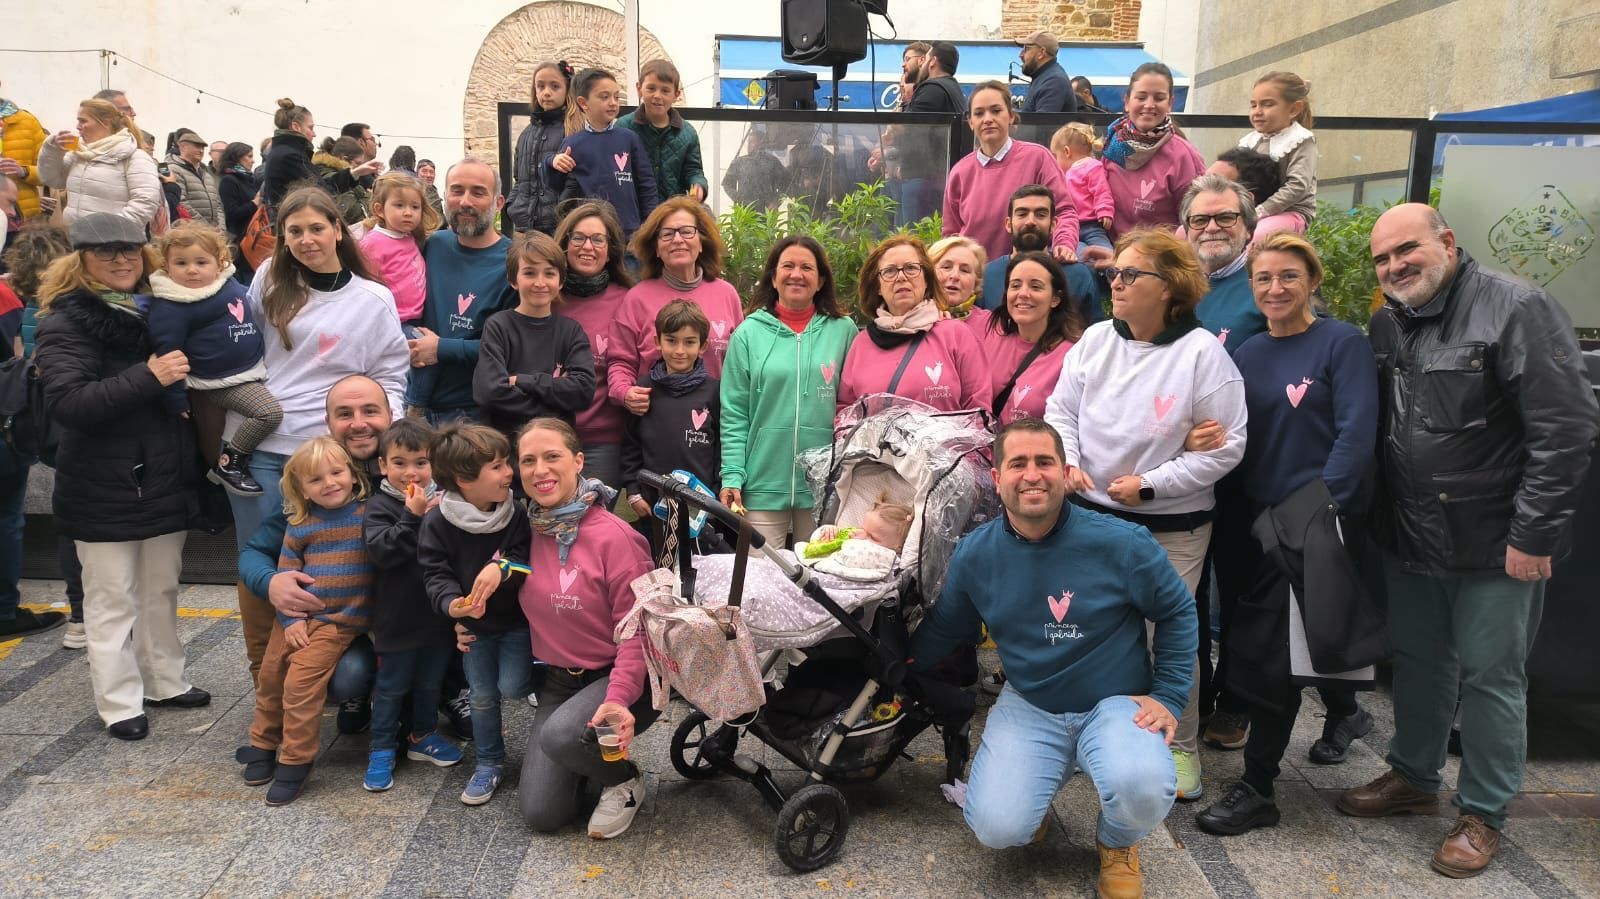 La familia de la 'princesa' Gabriela en la ortigada popular de Algeciras celebrada el pasado sábado, primer evento al que asistían para dar visibilidad a la enfermedad de la pequeña. Científicos estudian 800 fármacos en peces para dar con una cura.